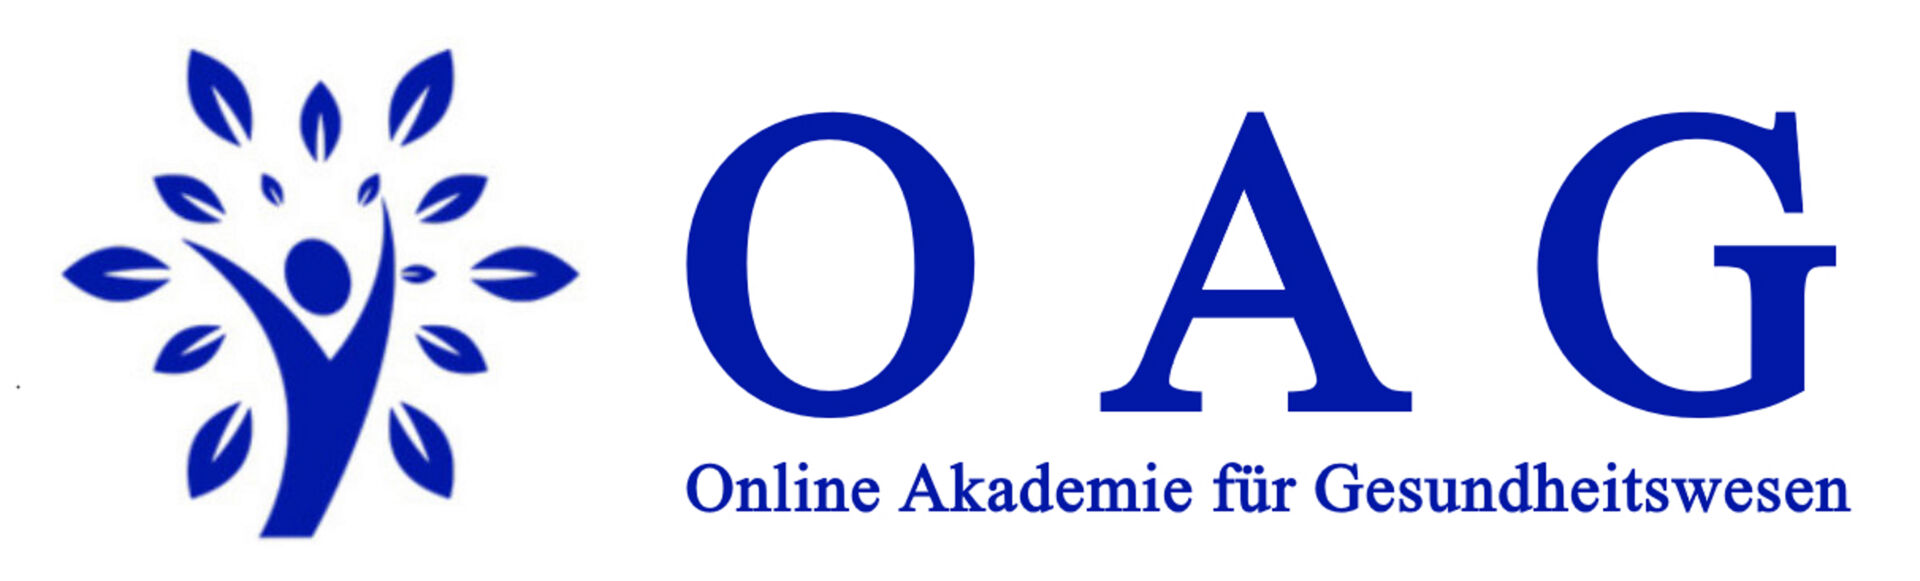 Online Akademie für Gesundheitswesen UG (haftungsbeschränkt), Ausbildungsinstitution des BBGM e. V.